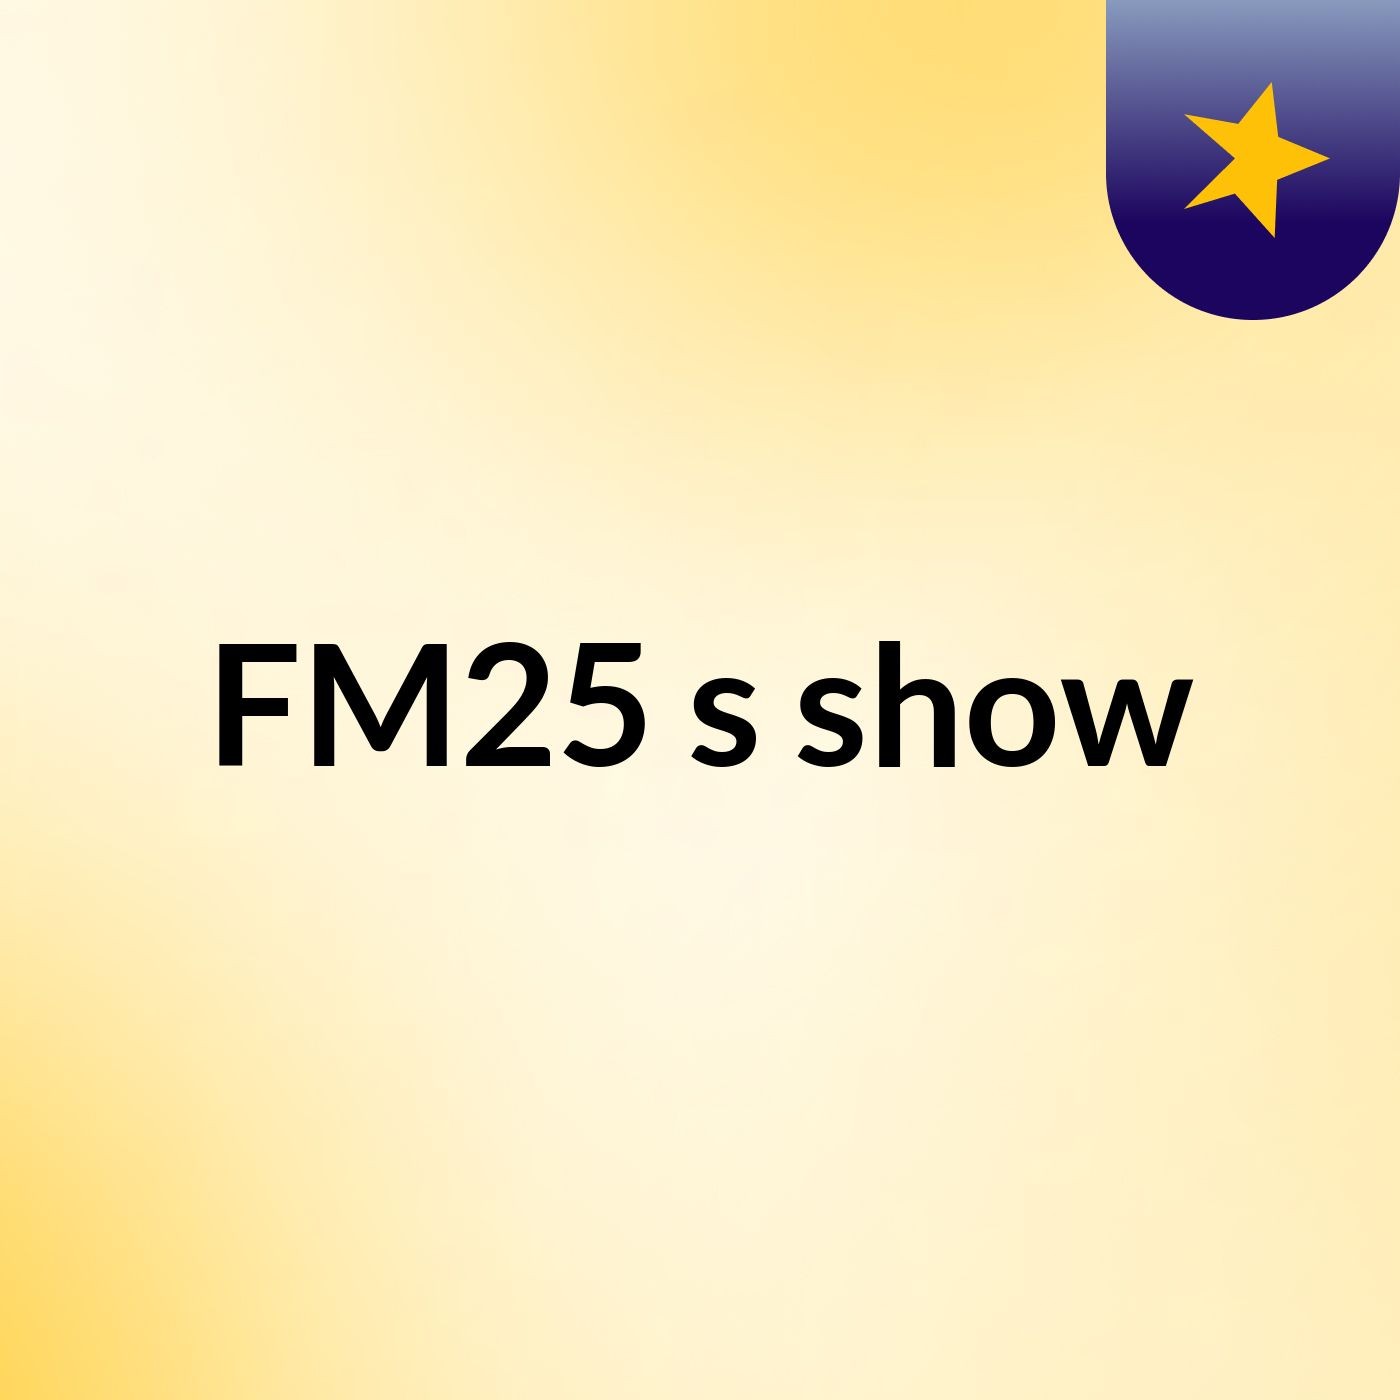 FM25's show